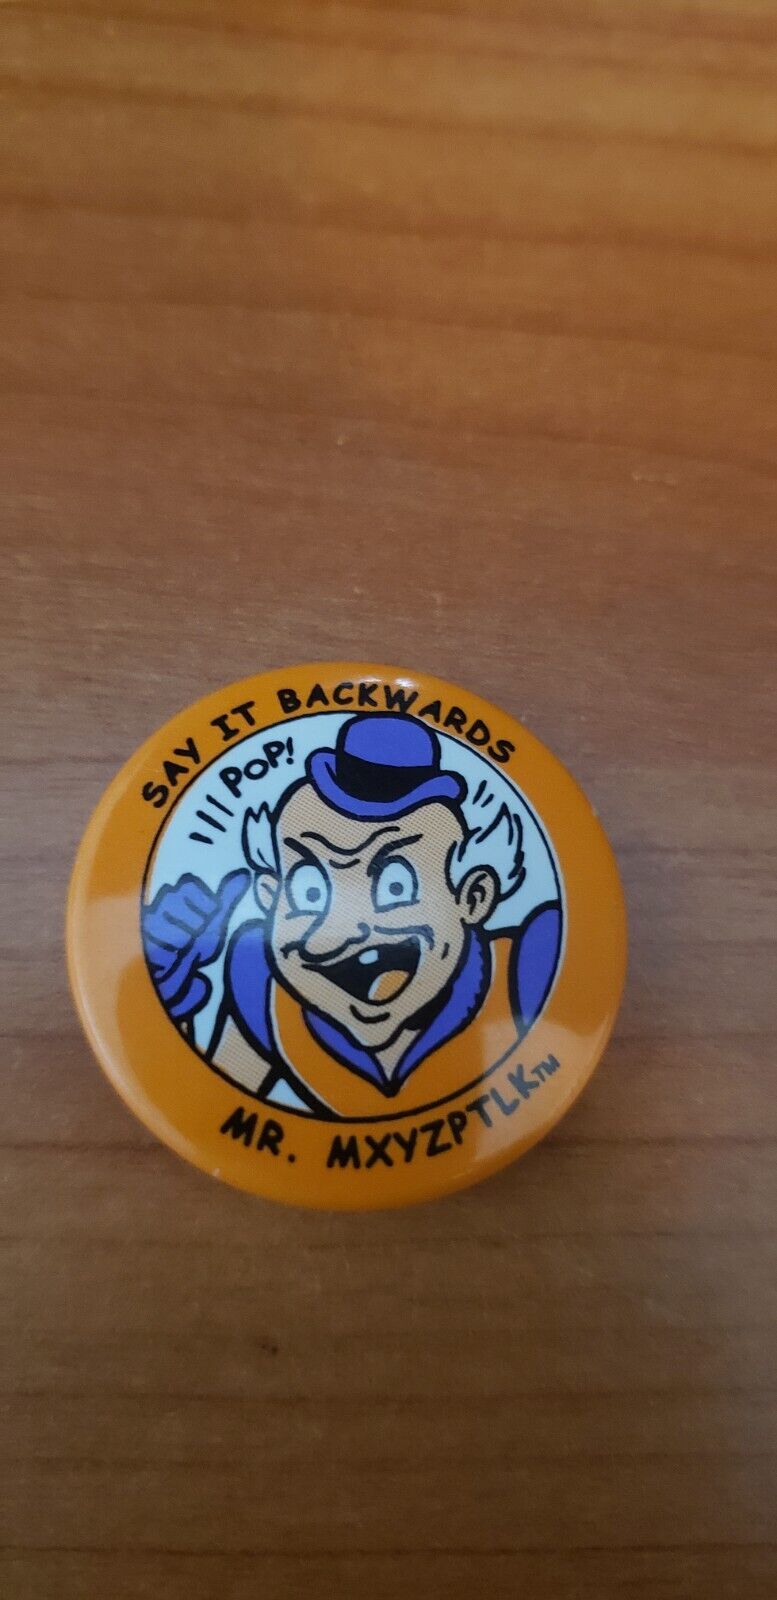 Mr Mxyzptlk Pin Back Button